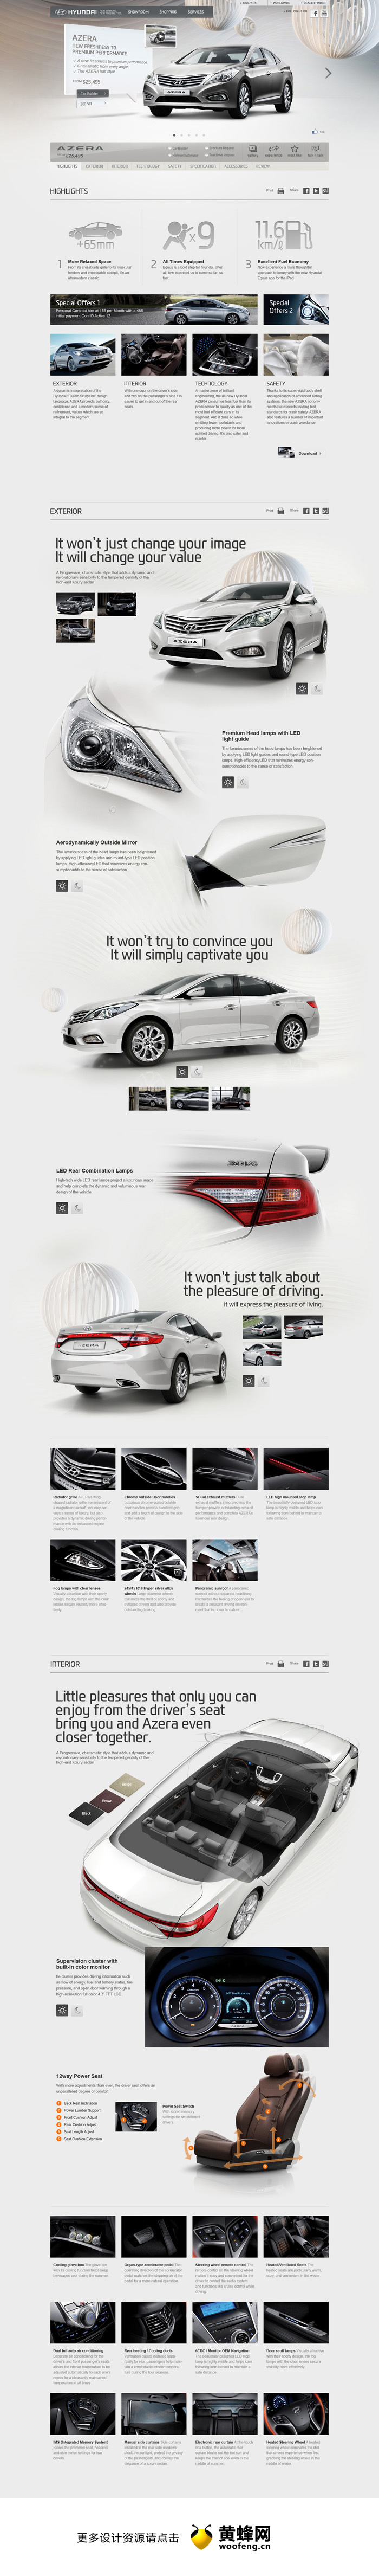 现代汽车网站设计截屏，来源自黄蜂网https://woofeng.cn/webcut